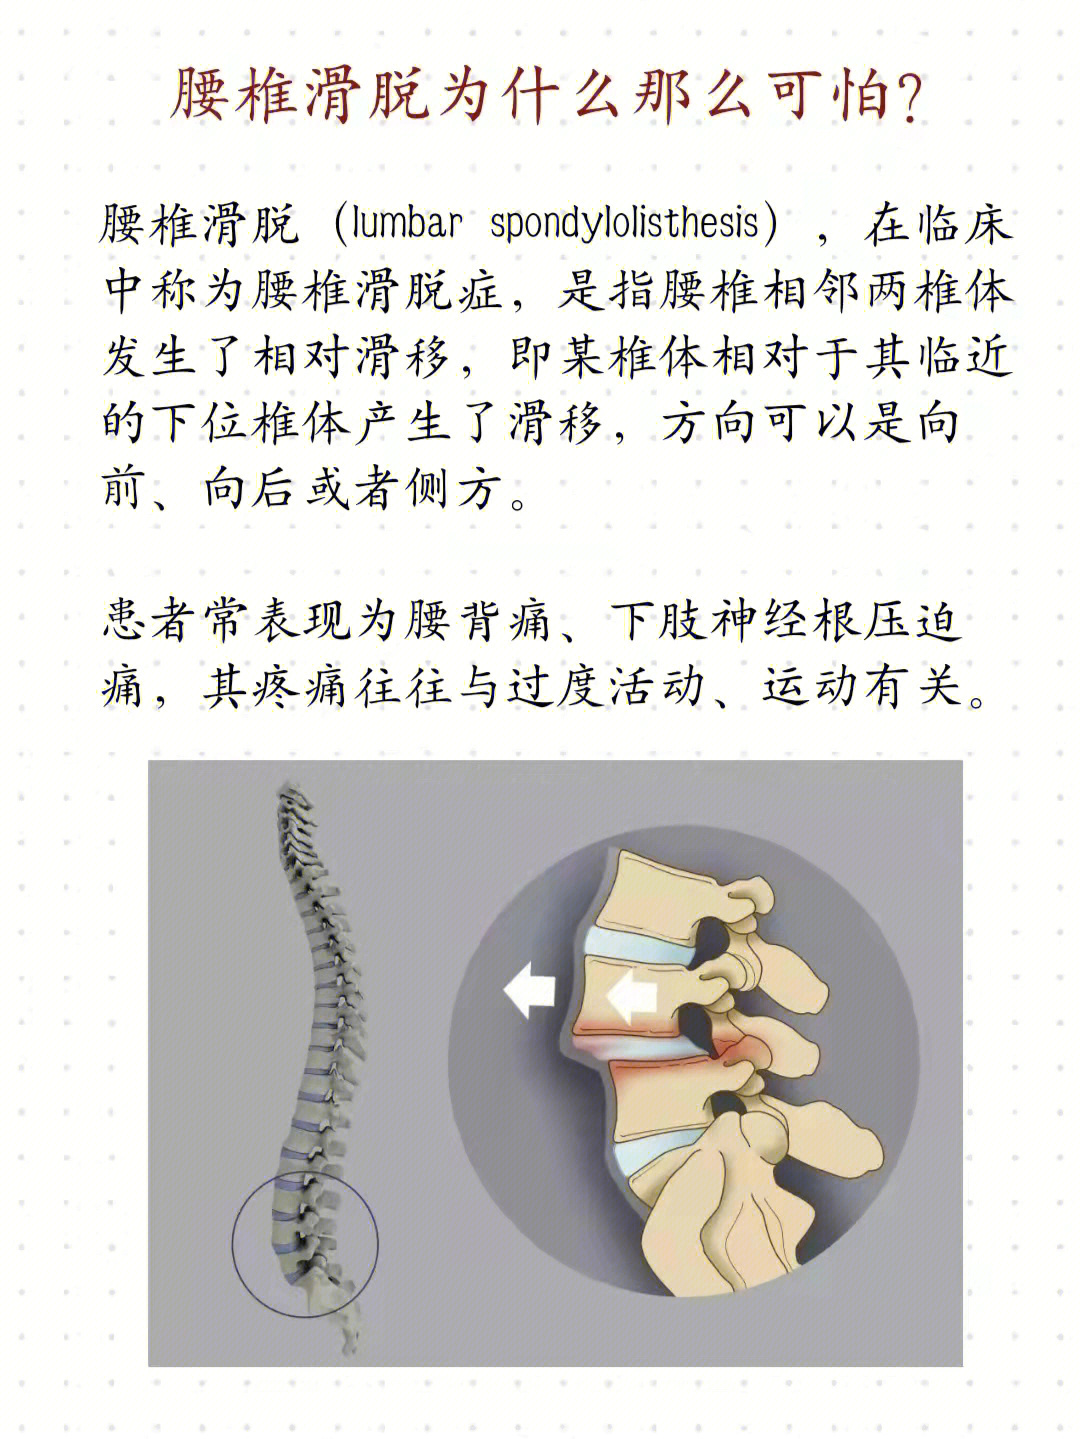 7~5%;在所有的腰椎滑脱中,由峡部崩裂引起的滑脱约占15%,退行性腰椎